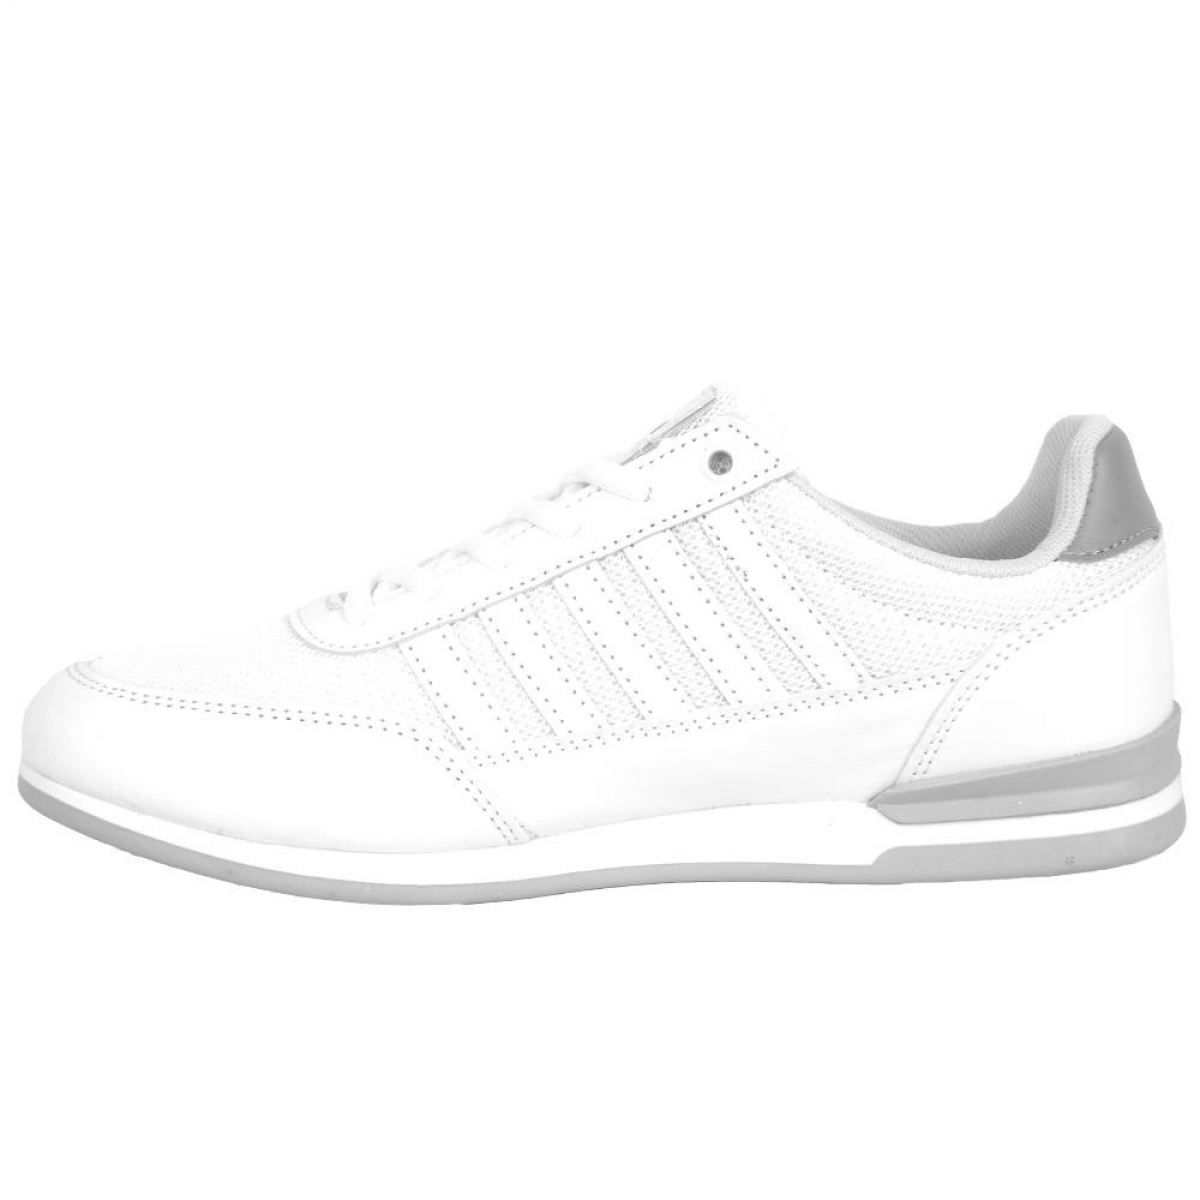 Flo 201-1135 Manner Beyaz Yazlık Bayan Sneaker Spor Ayakkabı. 2